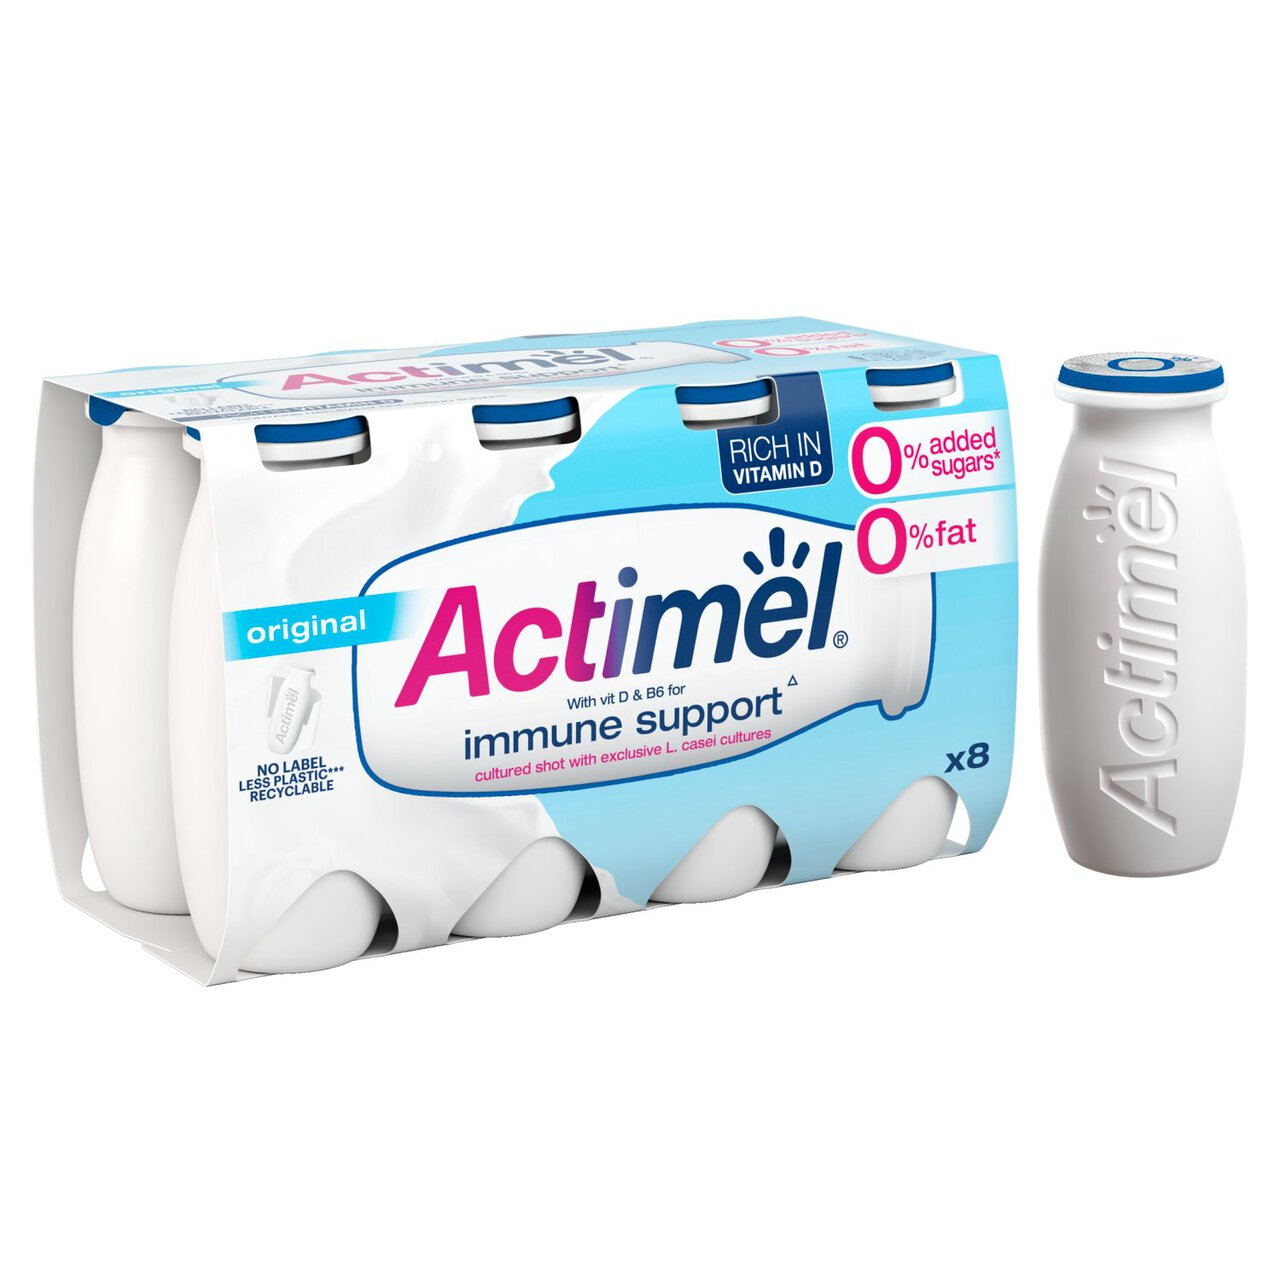 Actimel Original 0% Added Sugar | Zoom Free 8 Fat 100g x Drink Yoghurt